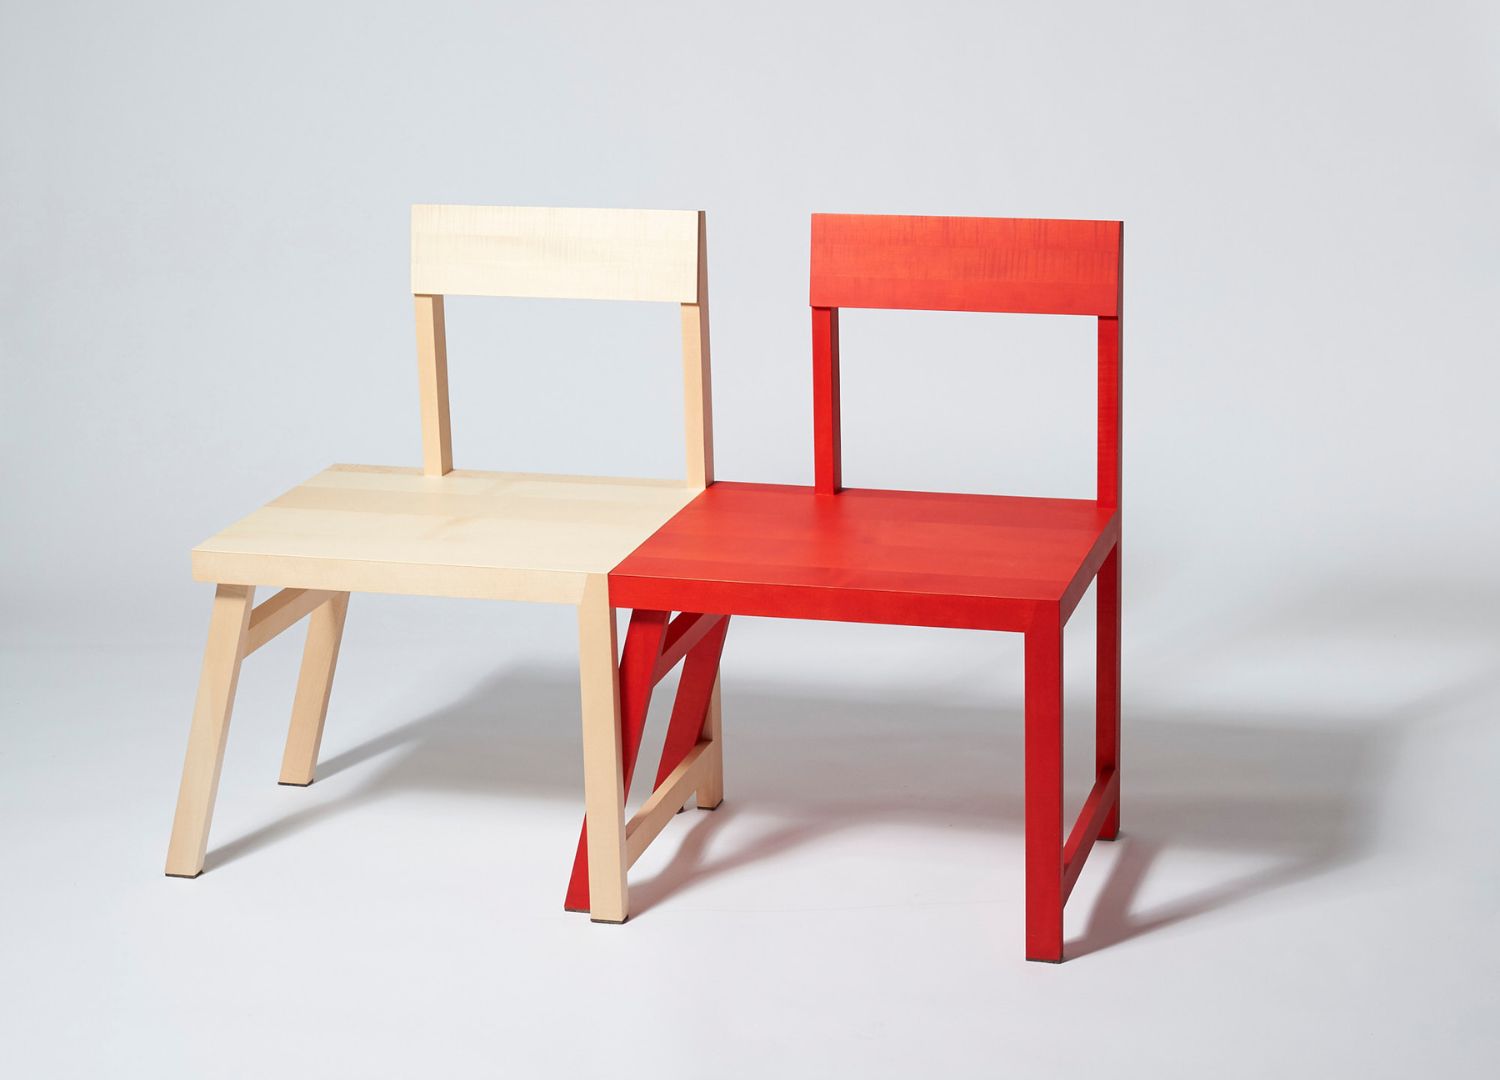 Spielbein chair by VOSDING Industrial Design